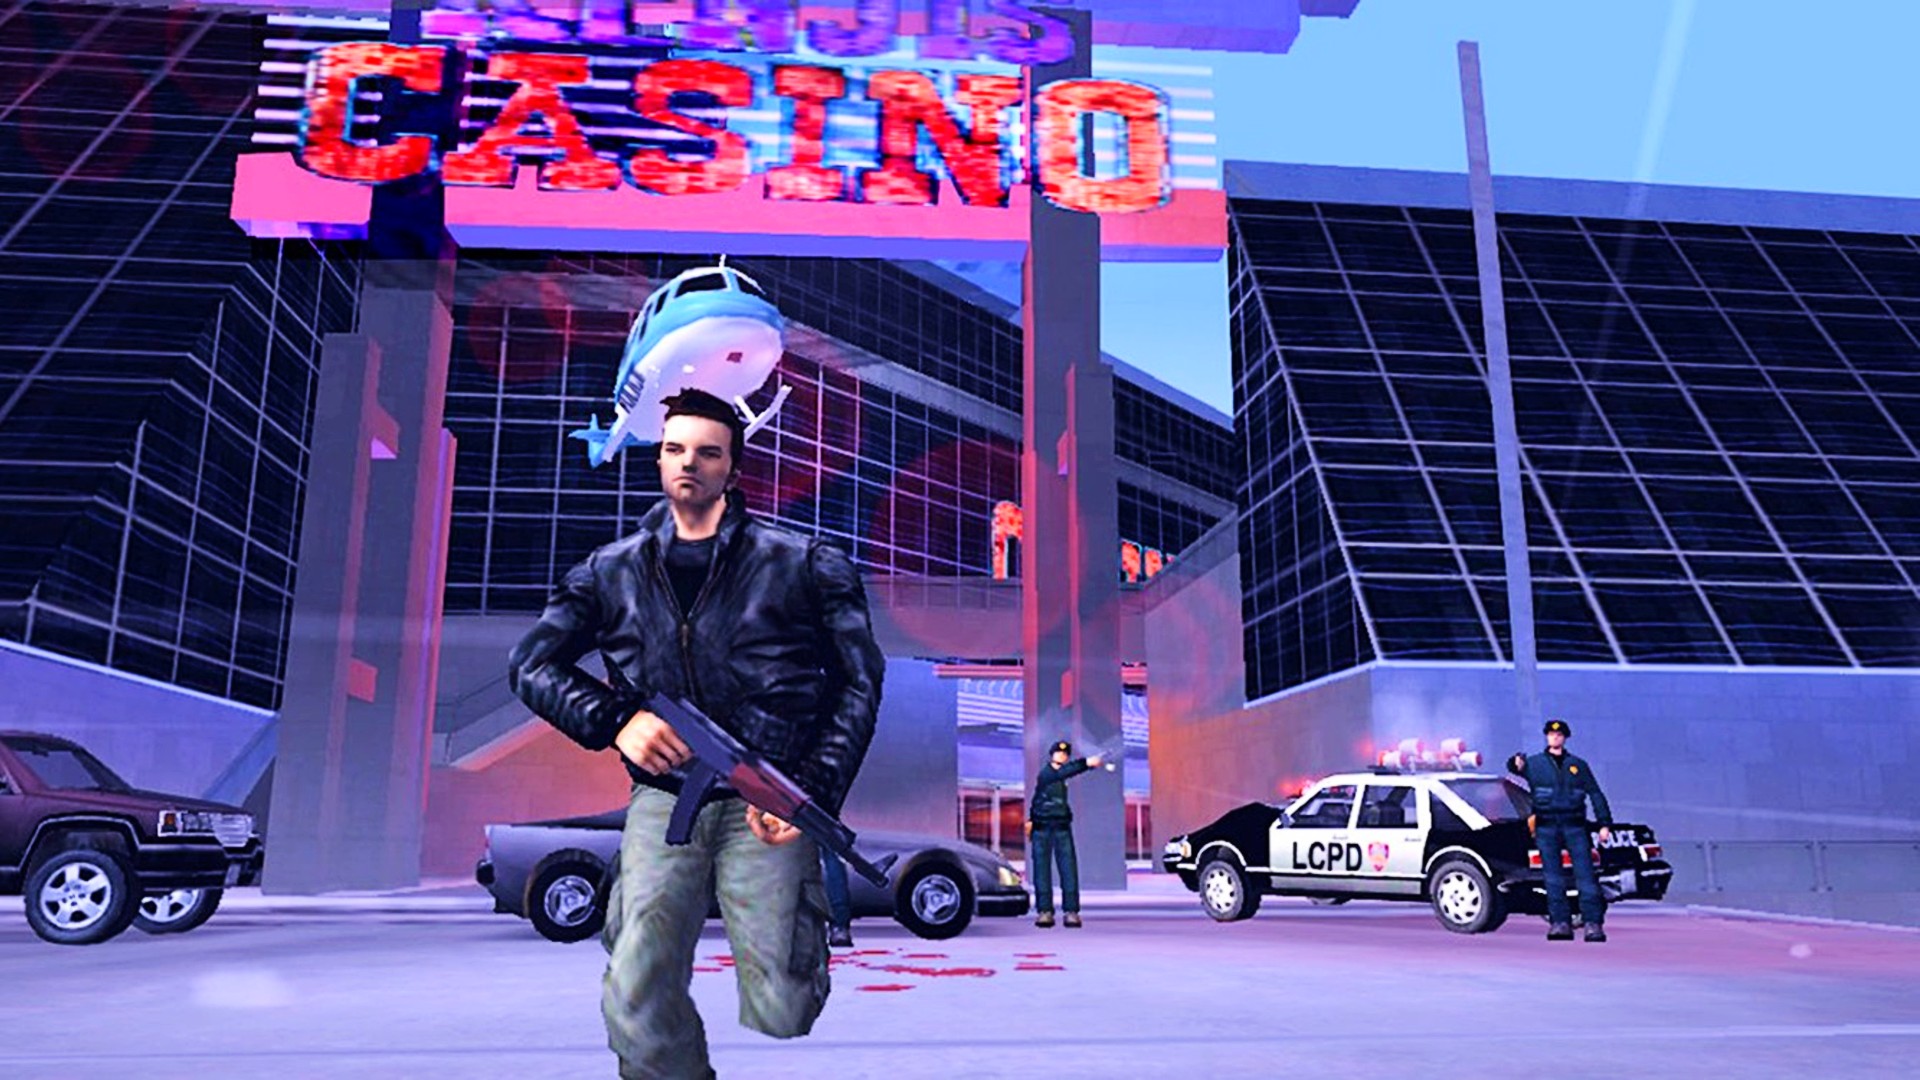 Grand Theft Auto: San Andreas - Speedrun